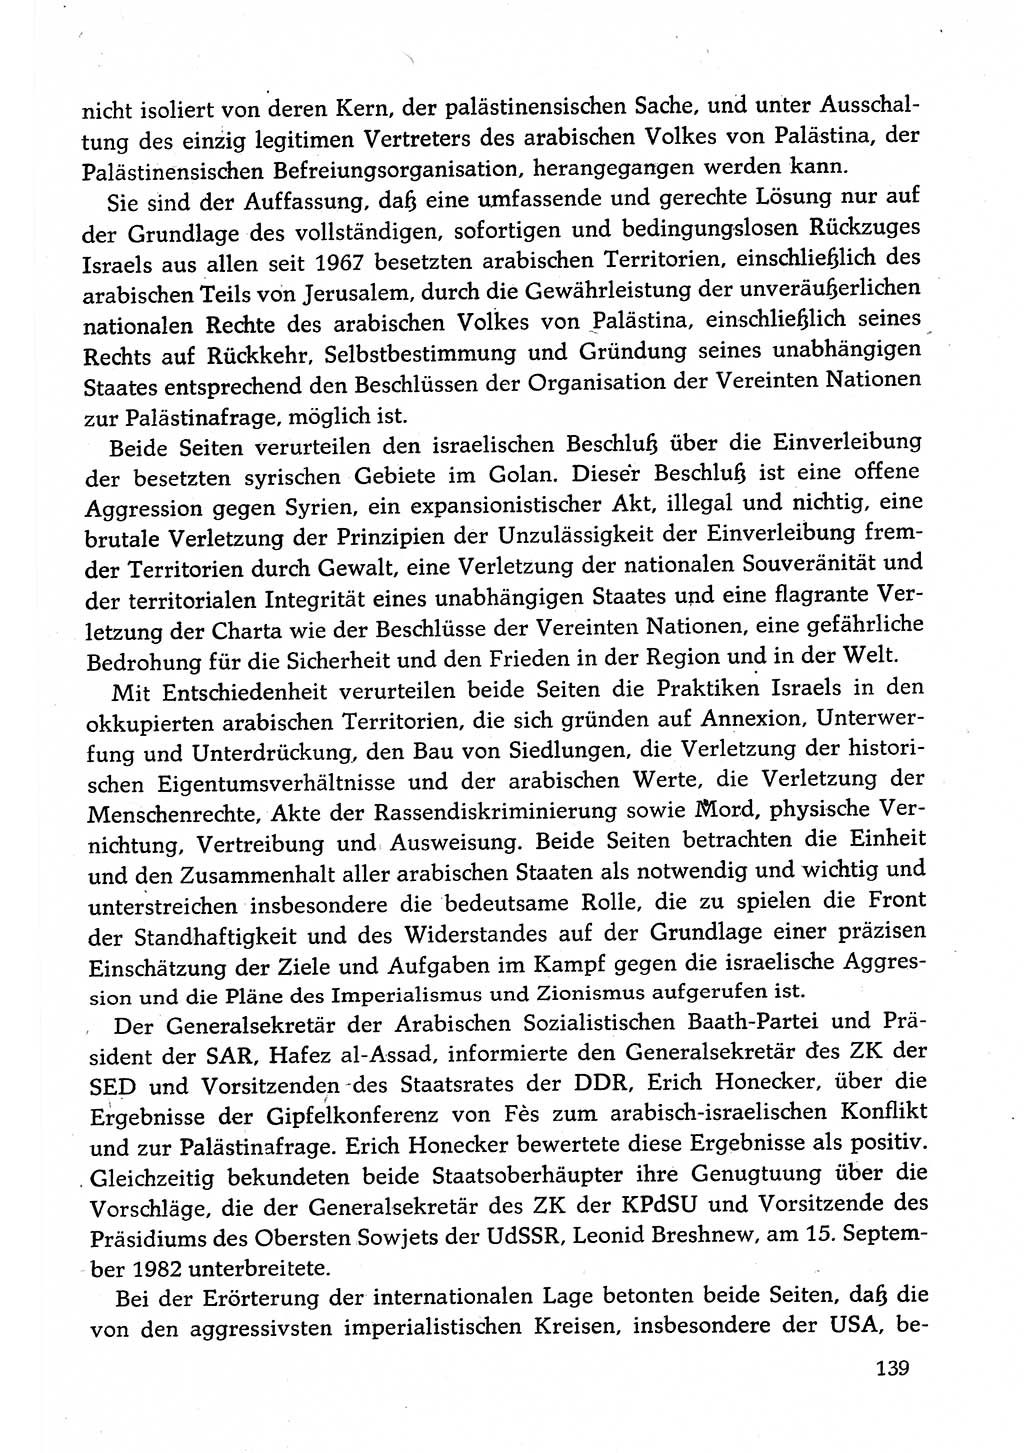 Dokumente der Sozialistischen Einheitspartei Deutschlands (SED) [Deutsche Demokratische Republik (DDR)] 1982-1983, Seite 139 (Dok. SED DDR 1982-1983, S. 139)